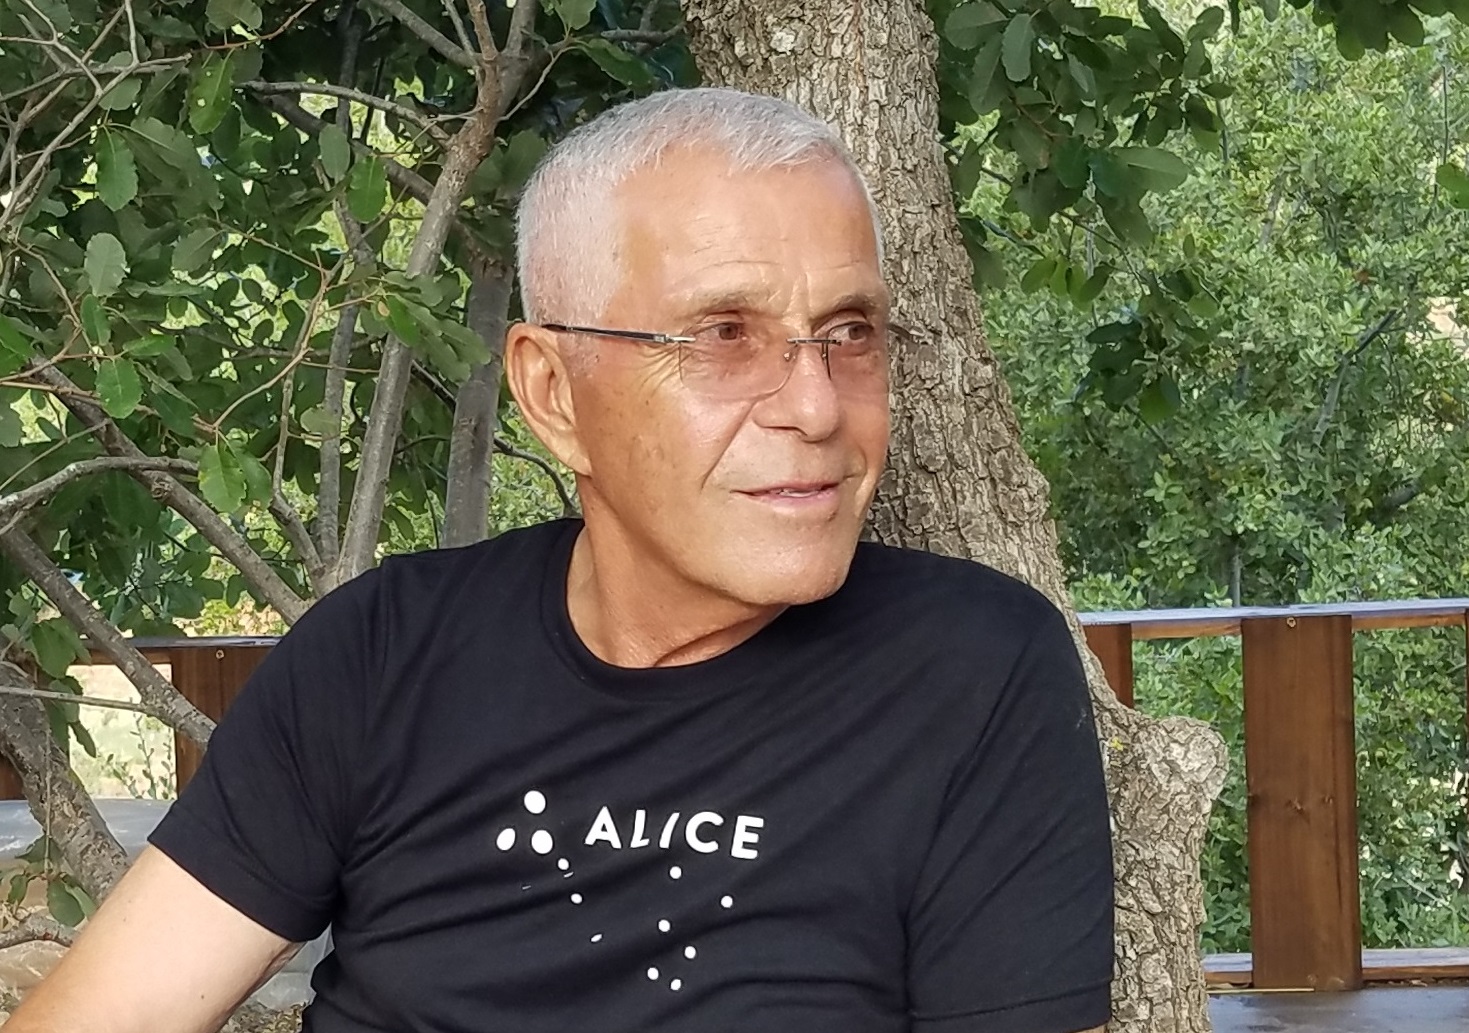 الكاتب الدكتور كامل مرقص (ناشط إجتماعي وبيئي ورئيس سابق لبلدية دير ميماس)